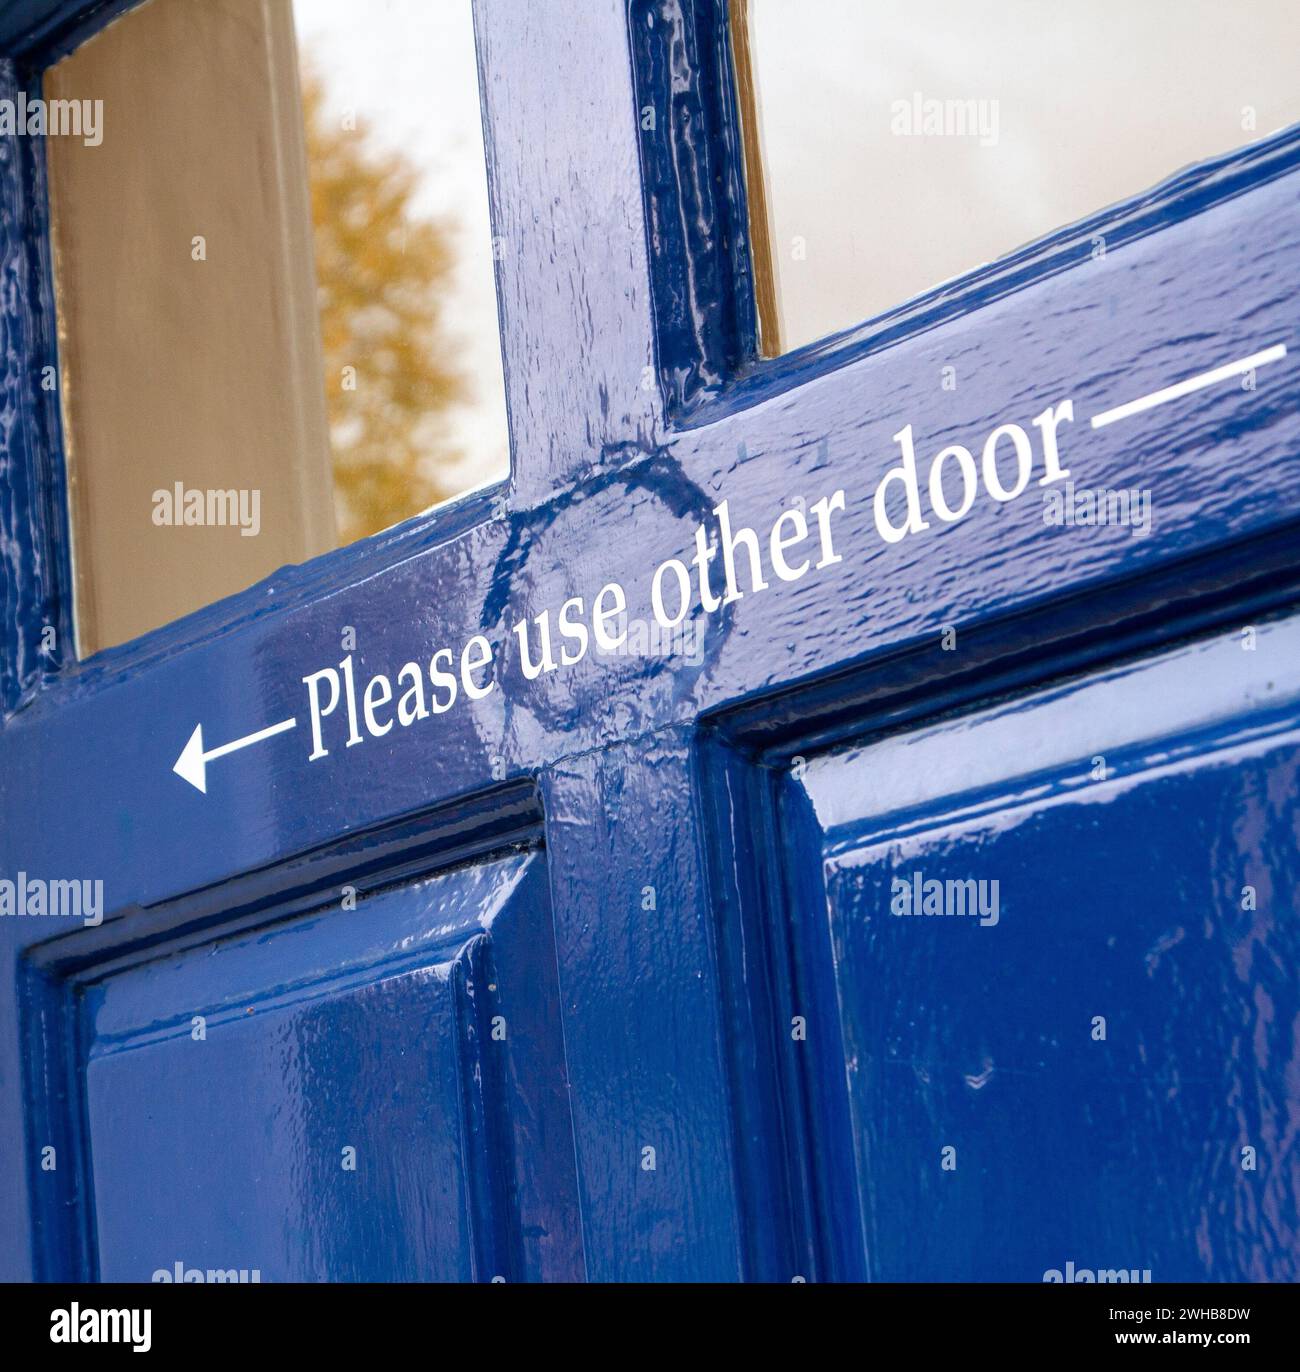 Lo sportello verniciato lucido blu scuro presenta una freccia di direzione e le istruzioni "Please use other door" ... Molto inglese:) Foto Stock